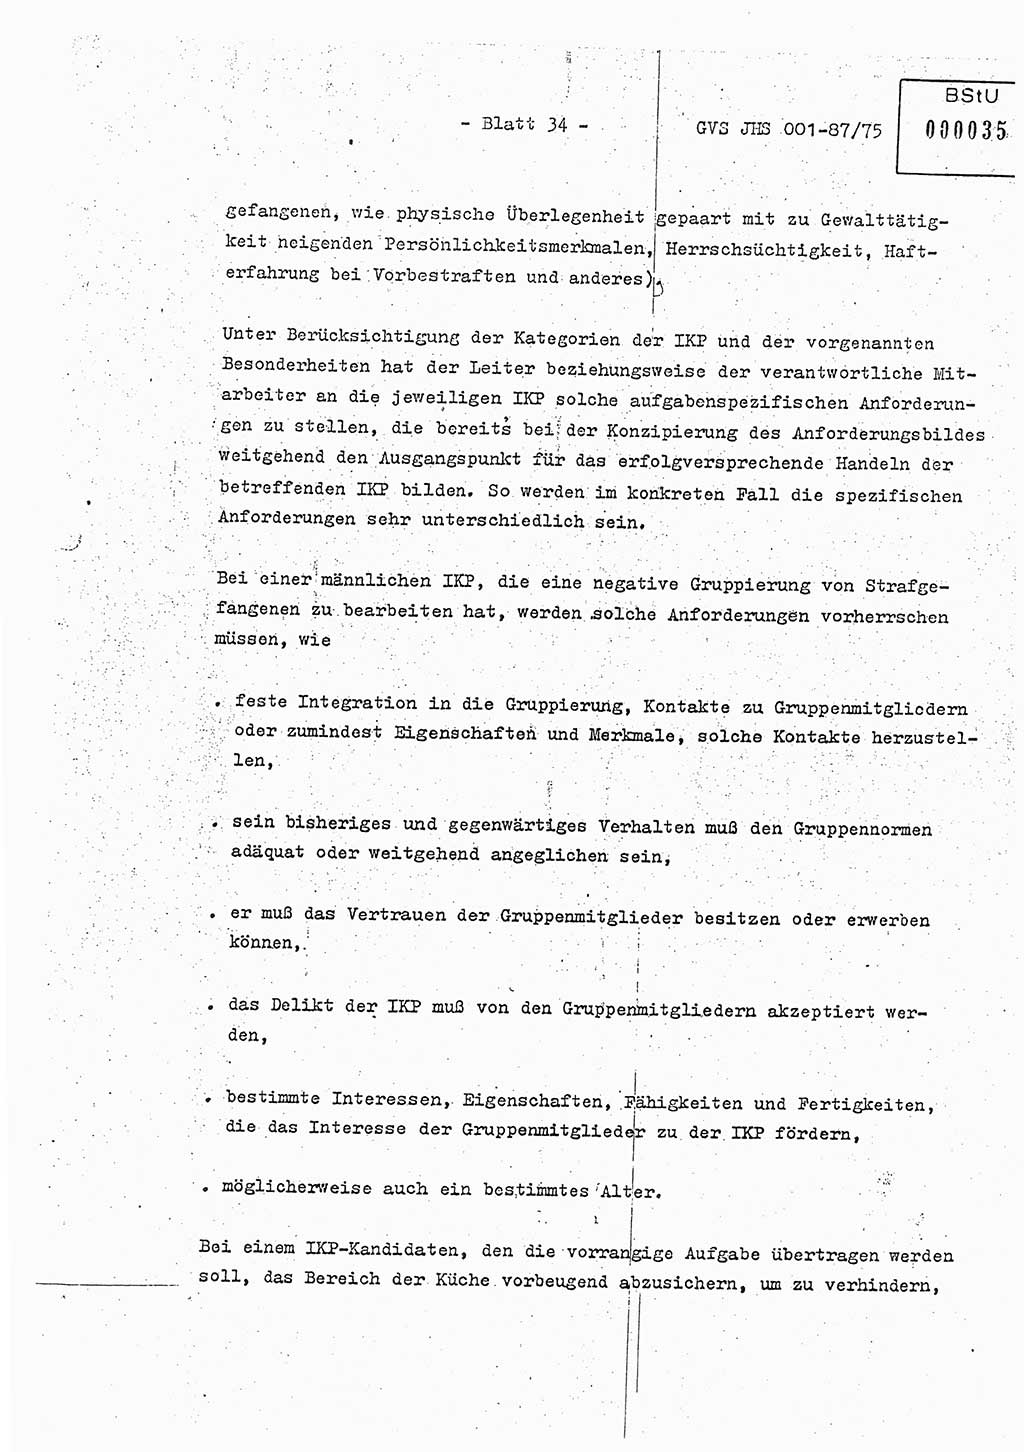 Diplomarbeit Hauptmann Volkmar Heinz (Abt. ⅩⅣ), Oberleutnant Lothar Rüdiger (BV Lpz. Abt. Ⅺ), Ministerium für Staatssicherheit (MfS) [Deutsche Demokratische Republik (DDR)], Juristische Hochschule (JHS), Geheime Verschlußsache (GVS) o001-87/75, Potsdam 1975, Seite 34 (Dipl.-Arb. MfS DDR JHS GVS o001-87/75 1975, S. 34)